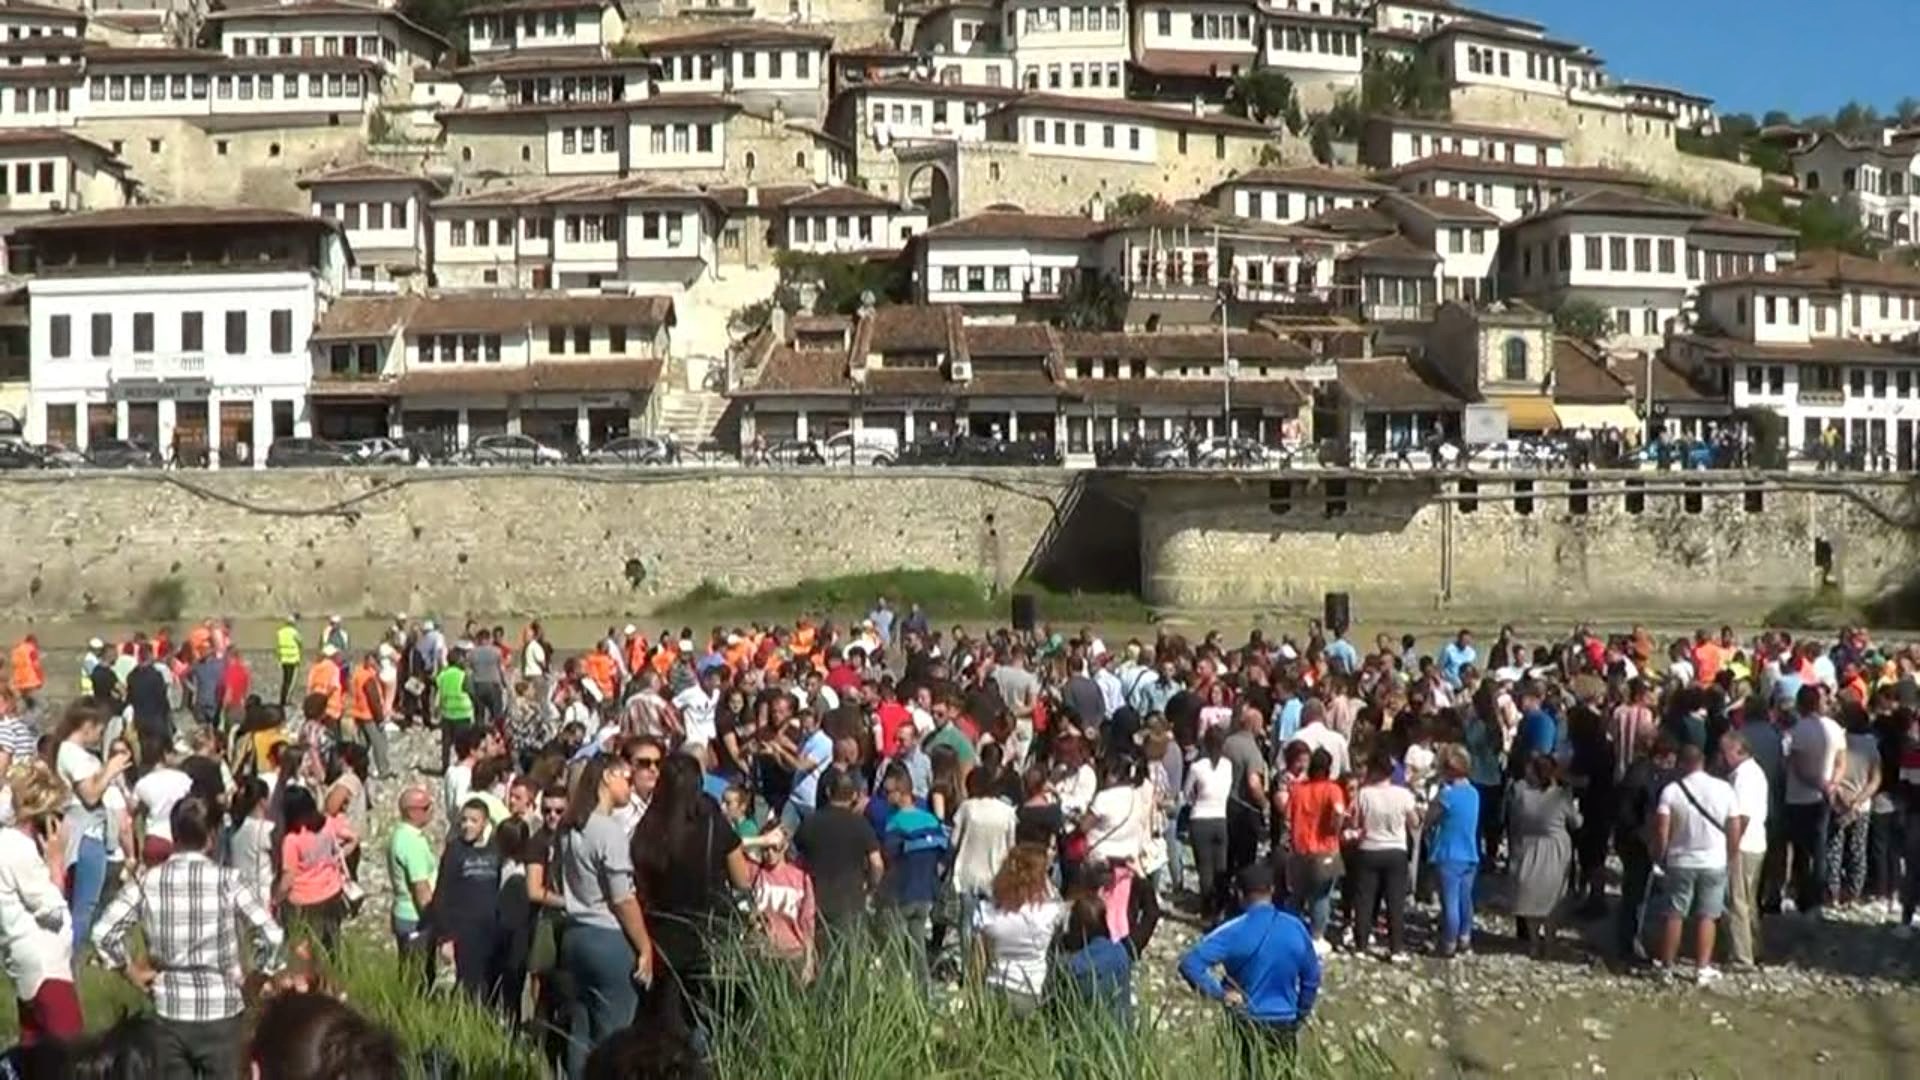 Aksion pastrimi në Berat, Klosi: Jemi në fazën finale për ndërhyrje në landfill